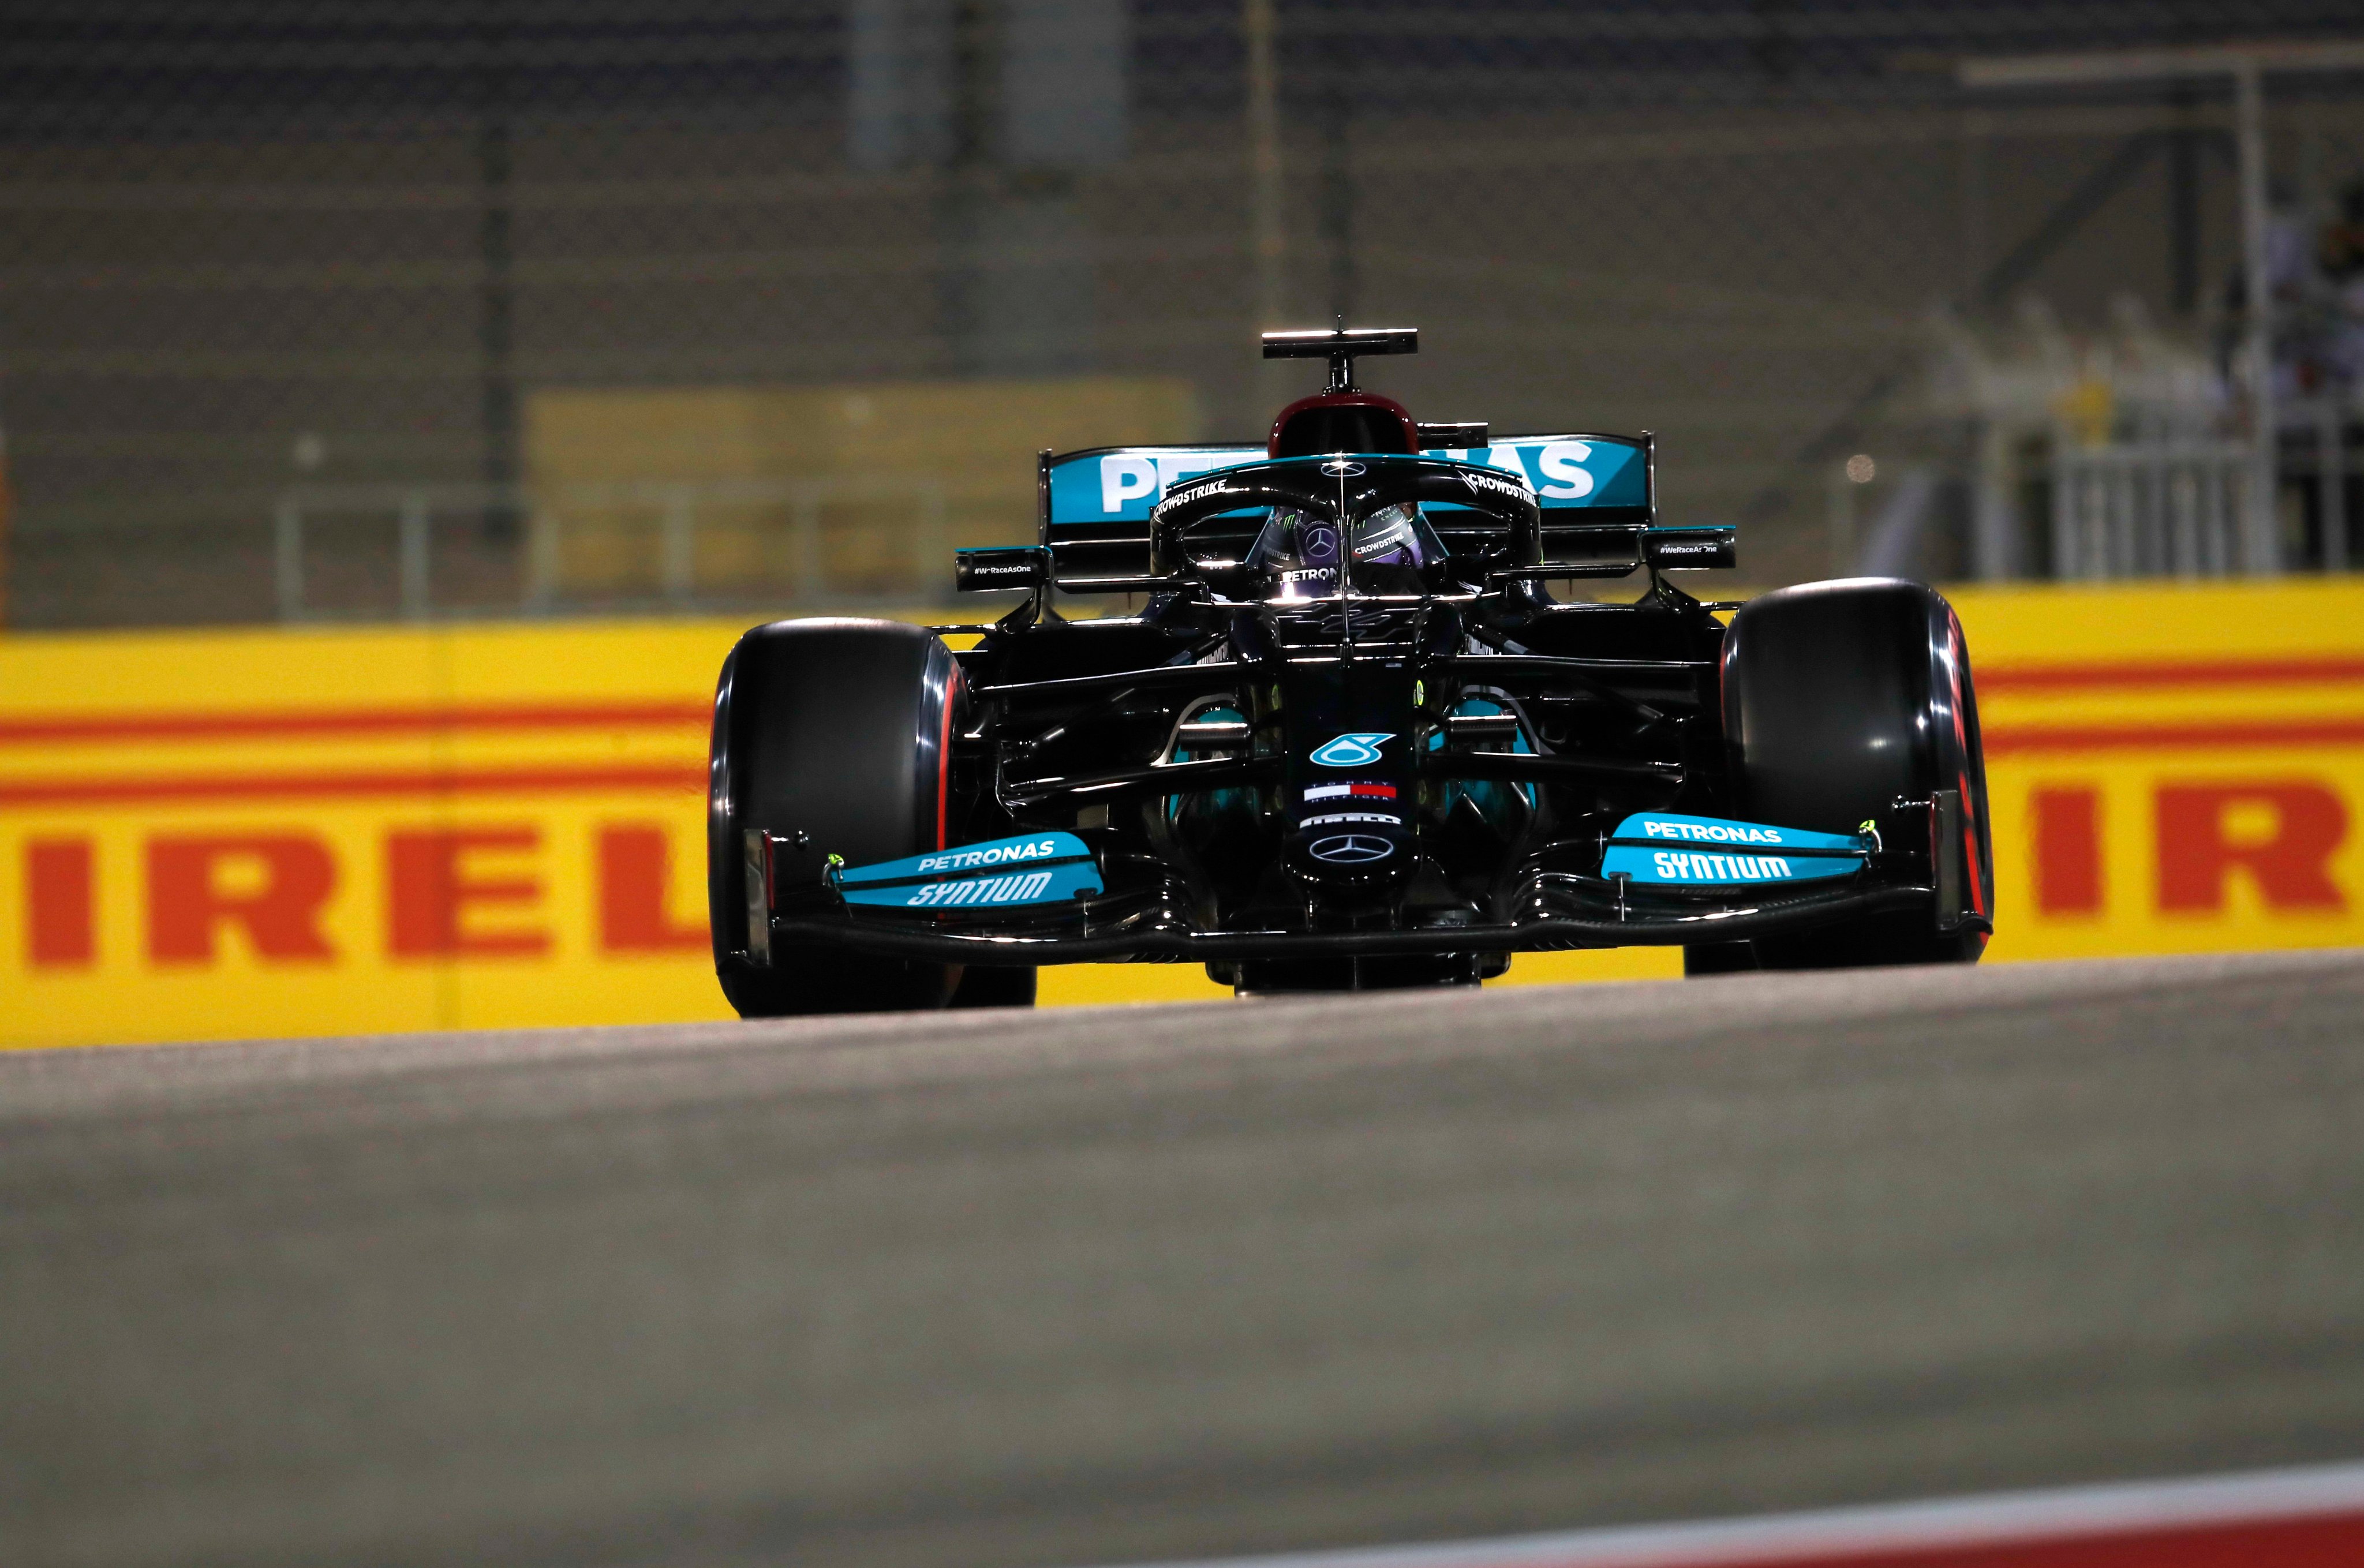 Klasemen F1 2021: Menangi Duel vs Max Verstappen, Lewis Hamilton Amankan Posisi Puncak